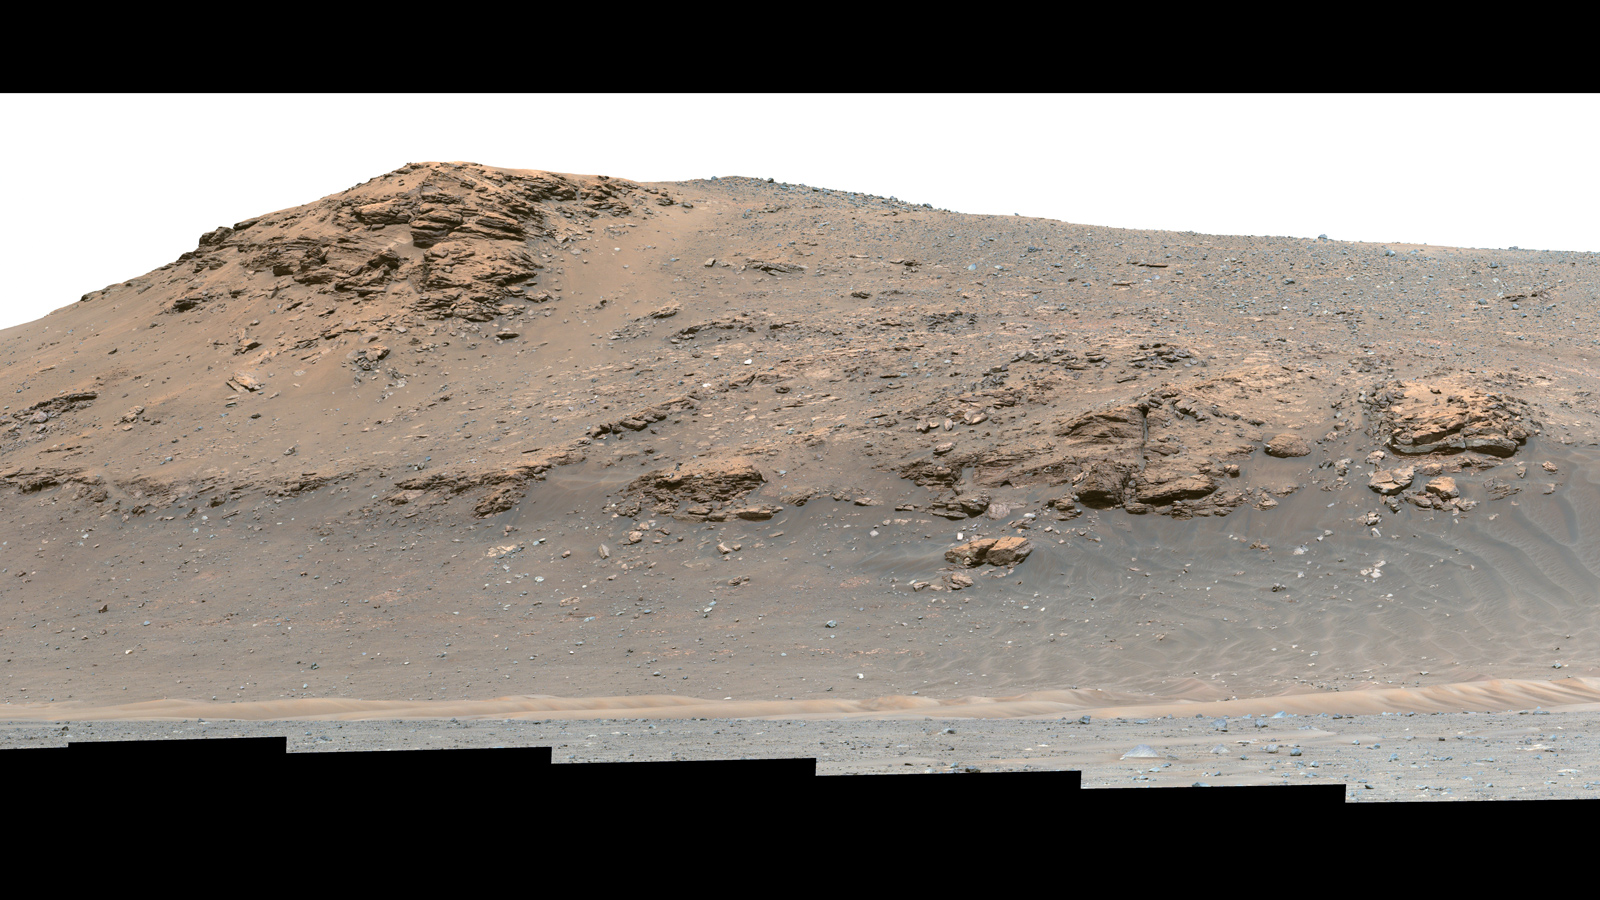 slide 4 - a color image of Mars